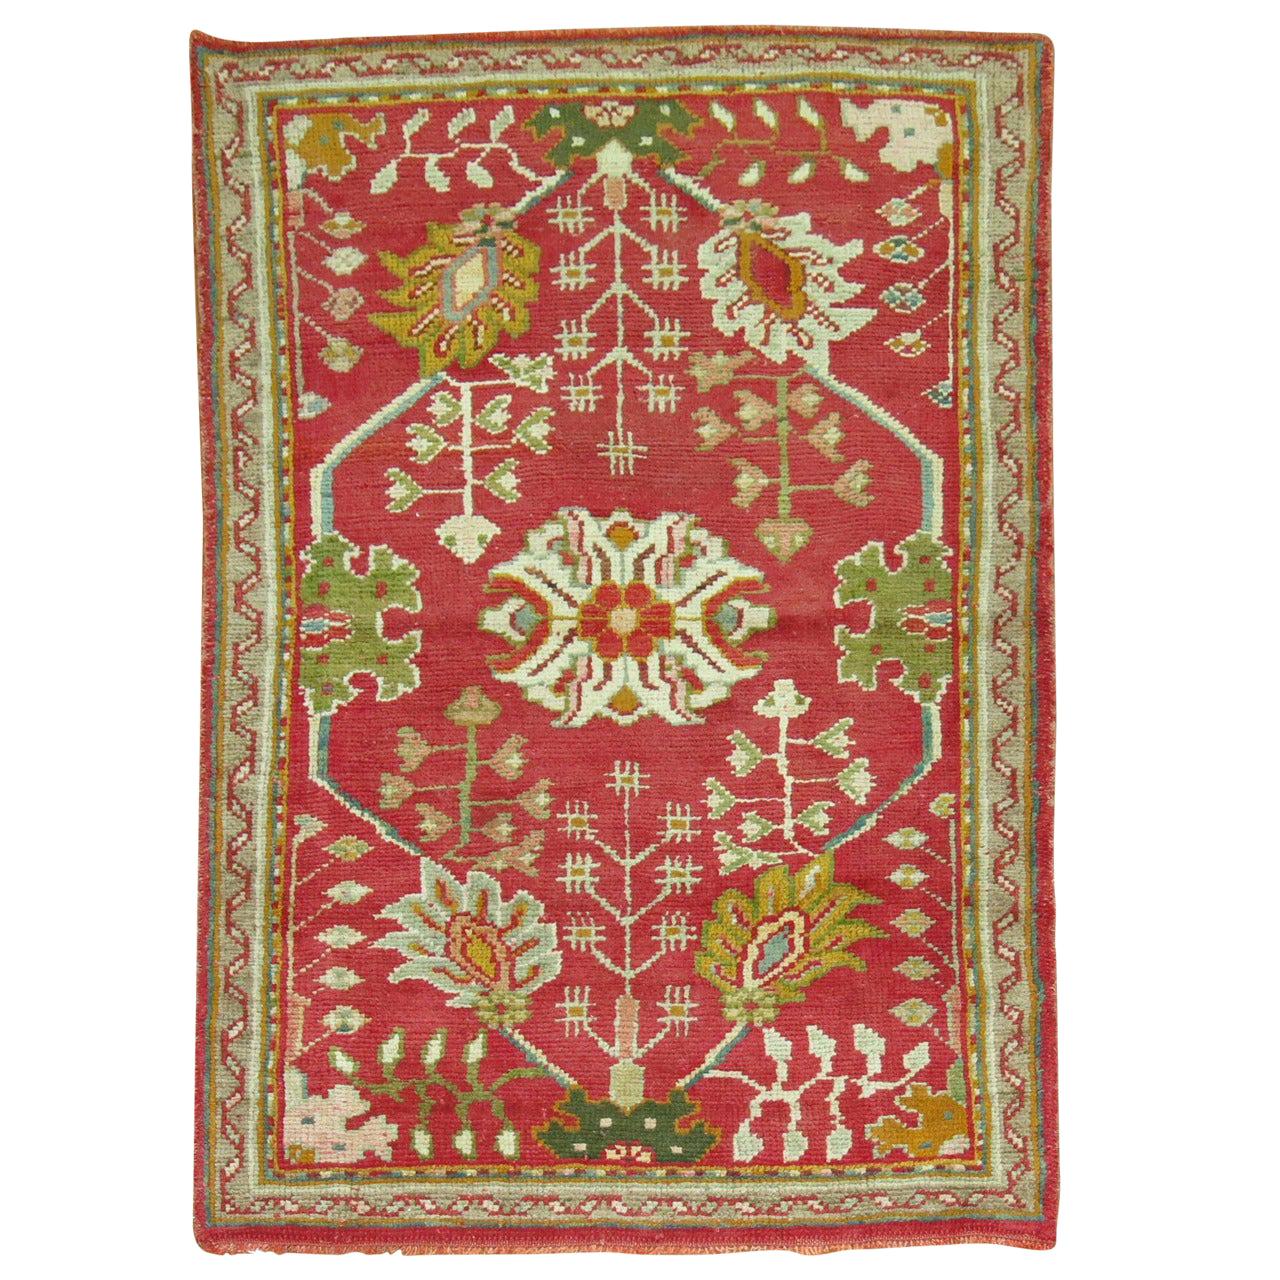 Début du 20e siècle, tapis turc Oushak antique rouge vif et vert